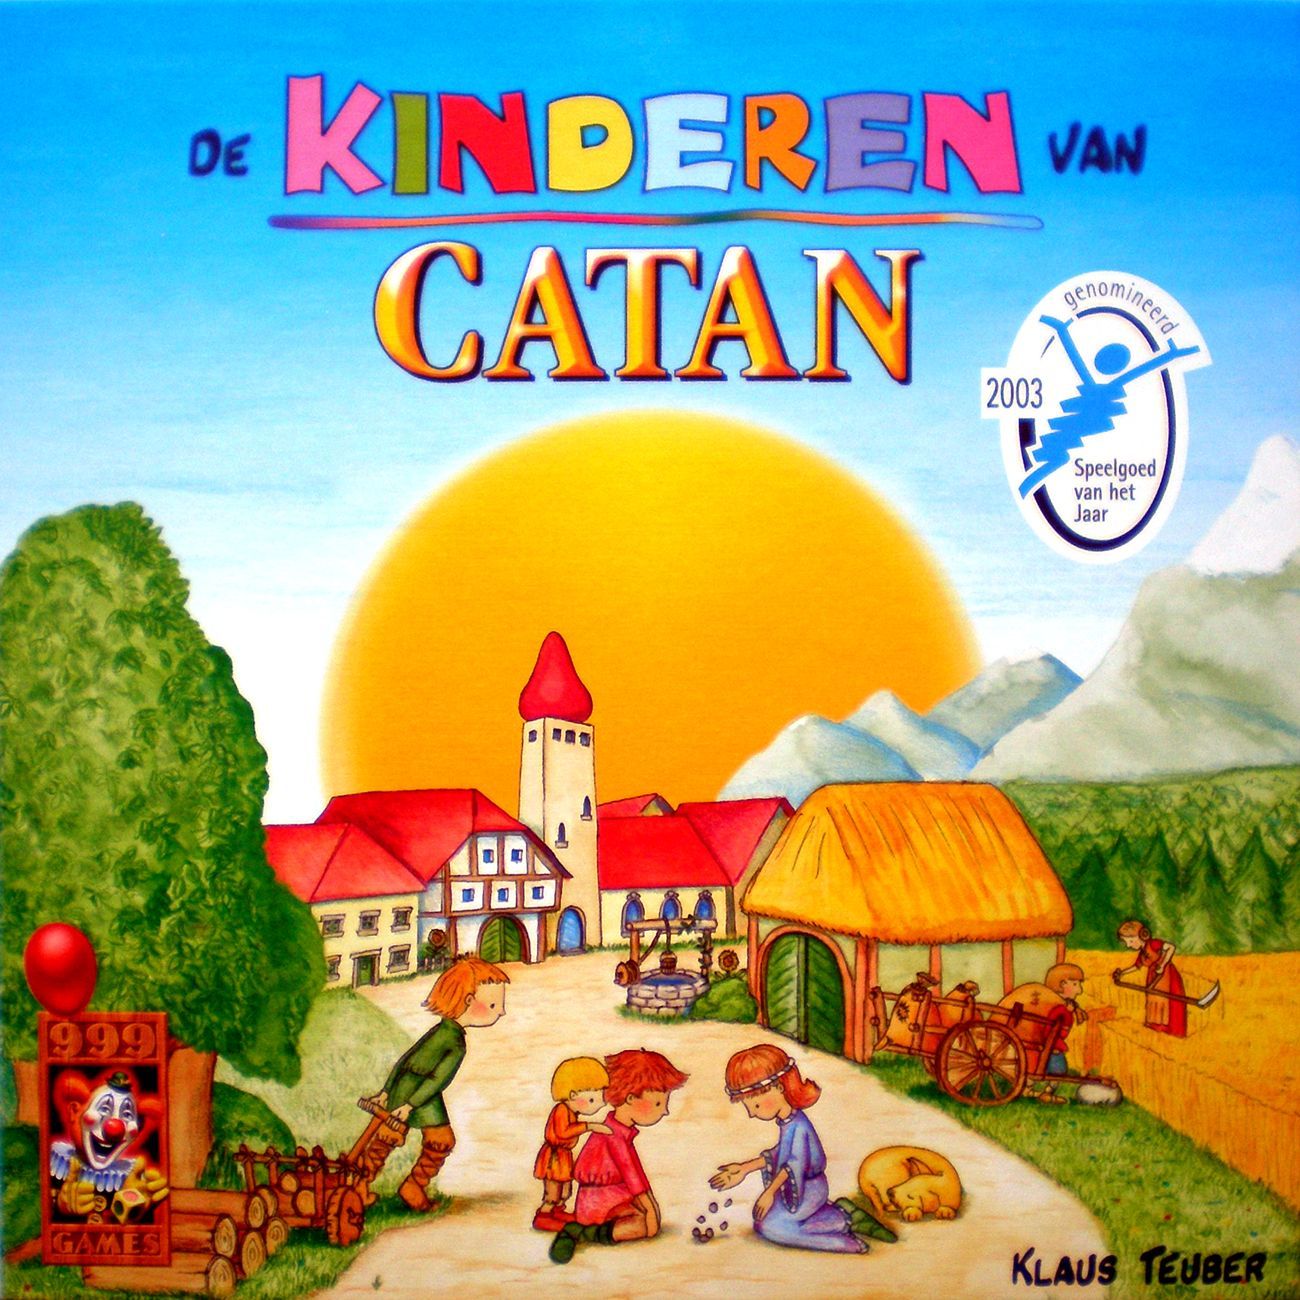 De Kinderen van Catan